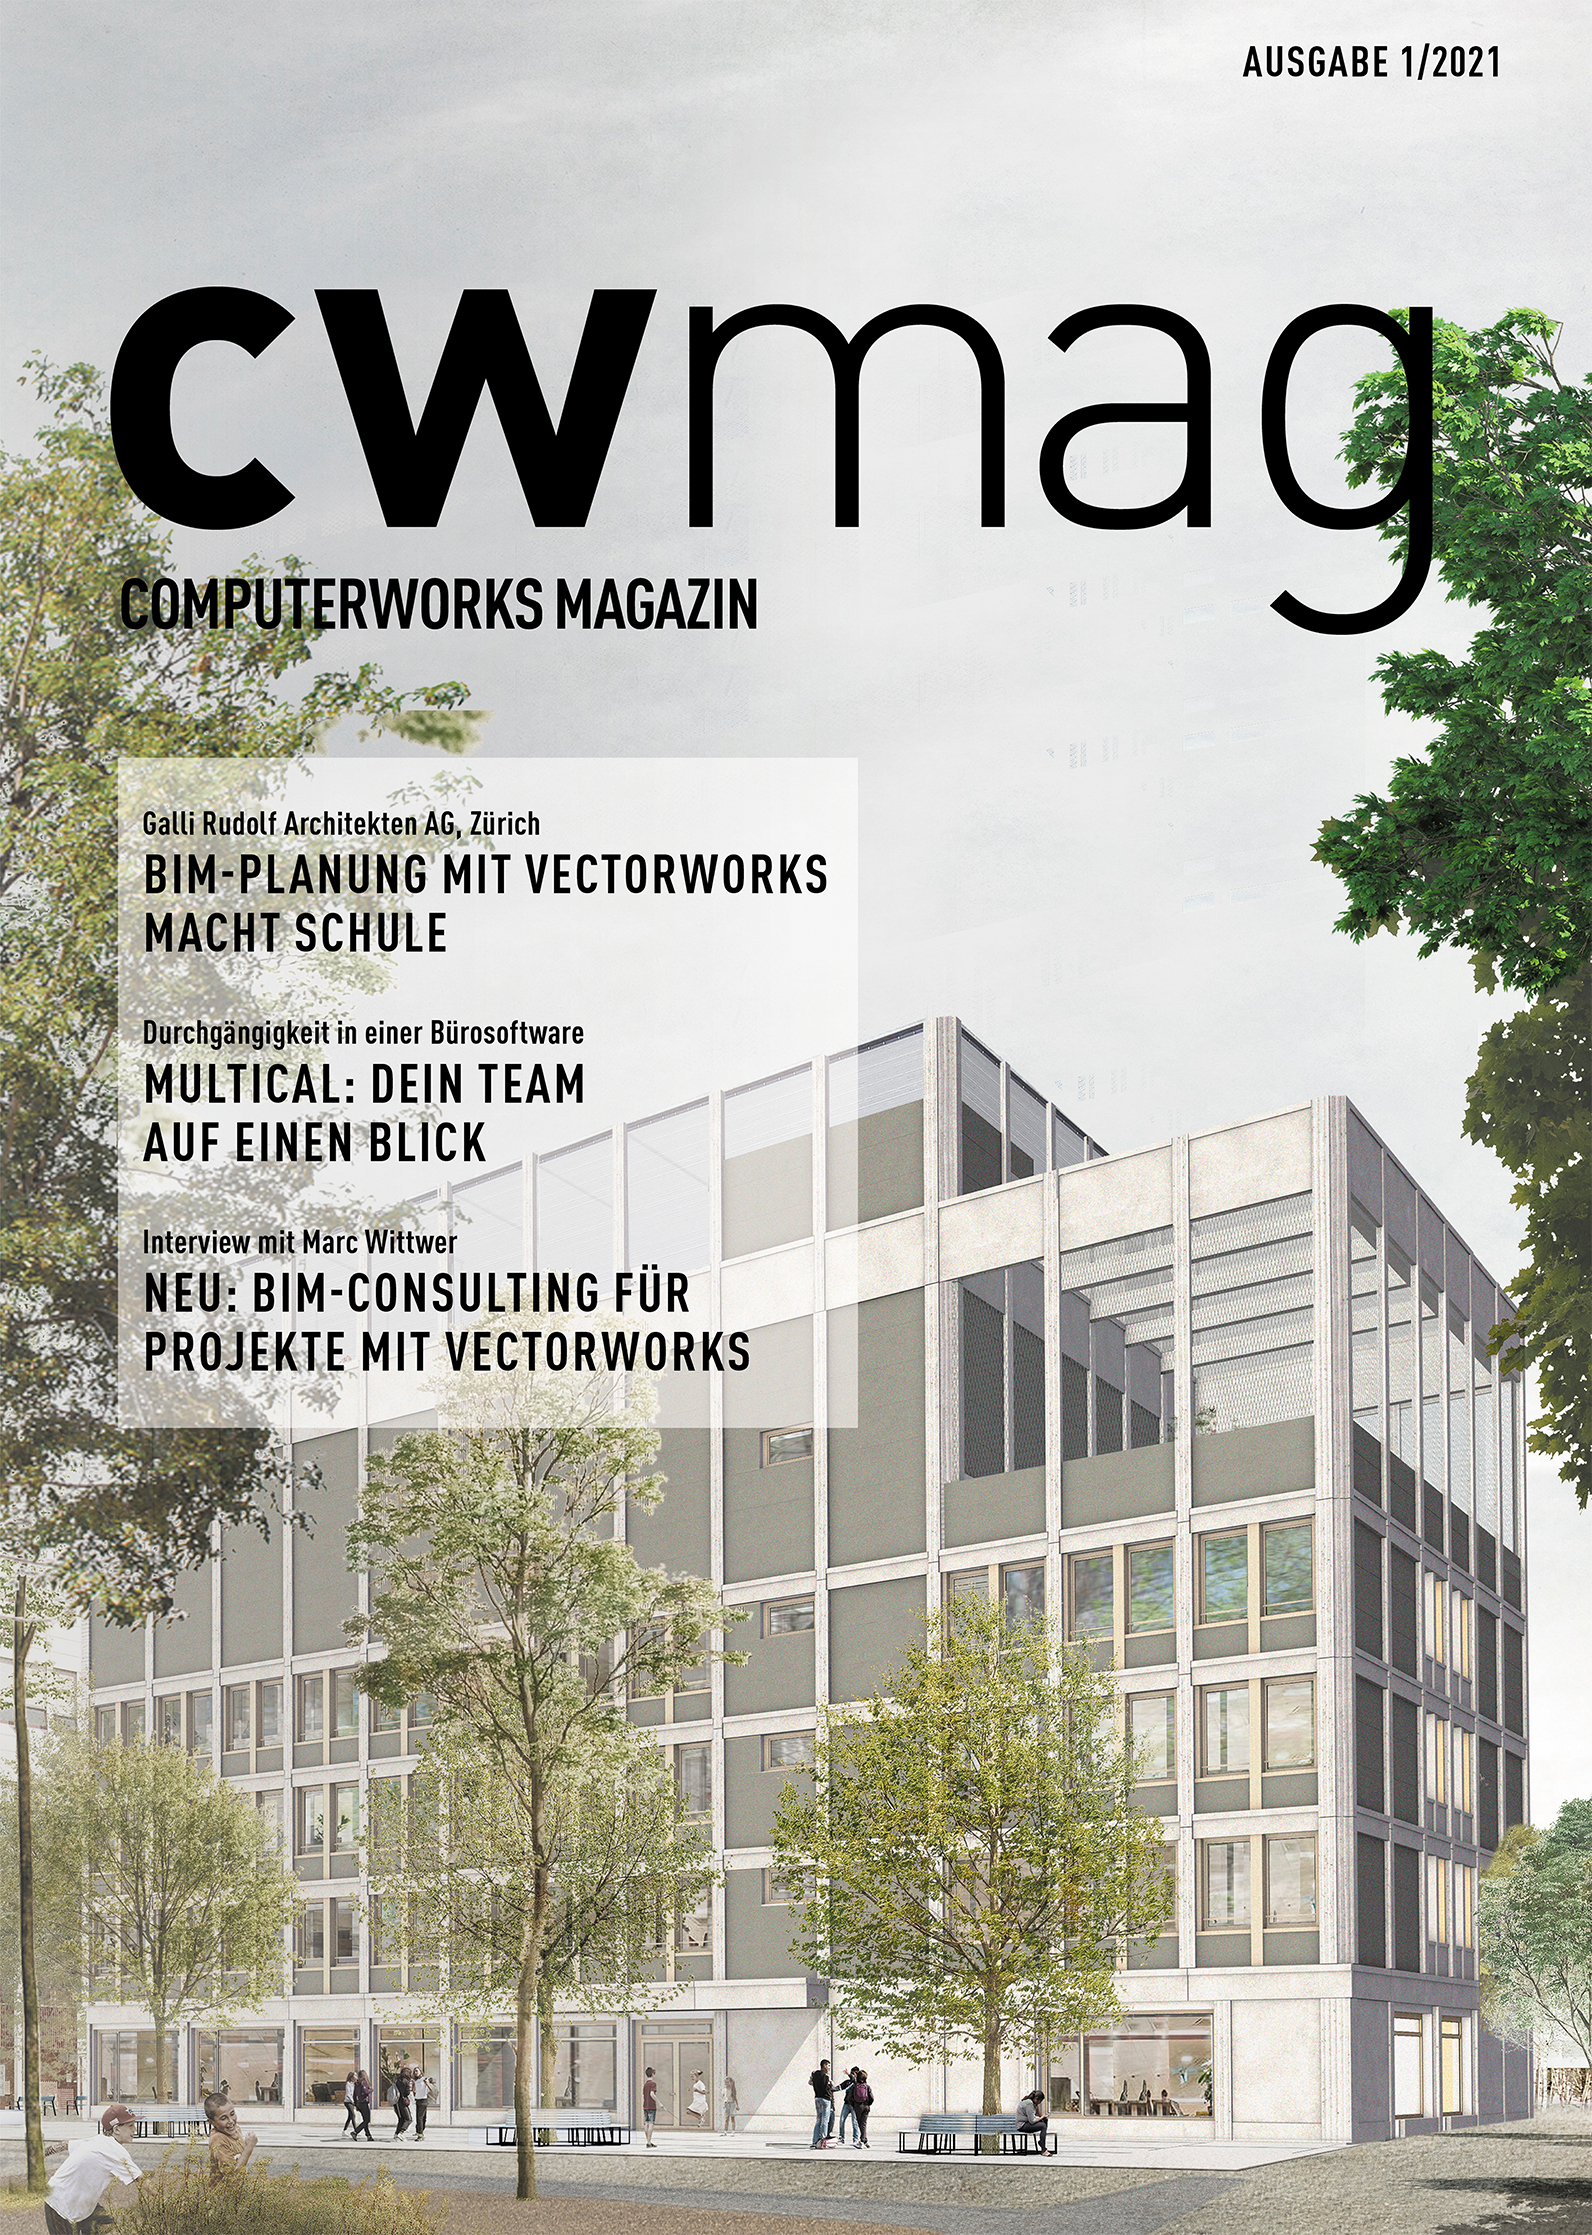 cwmag ComputerWorks Magazin -Ausgabe 01/2021